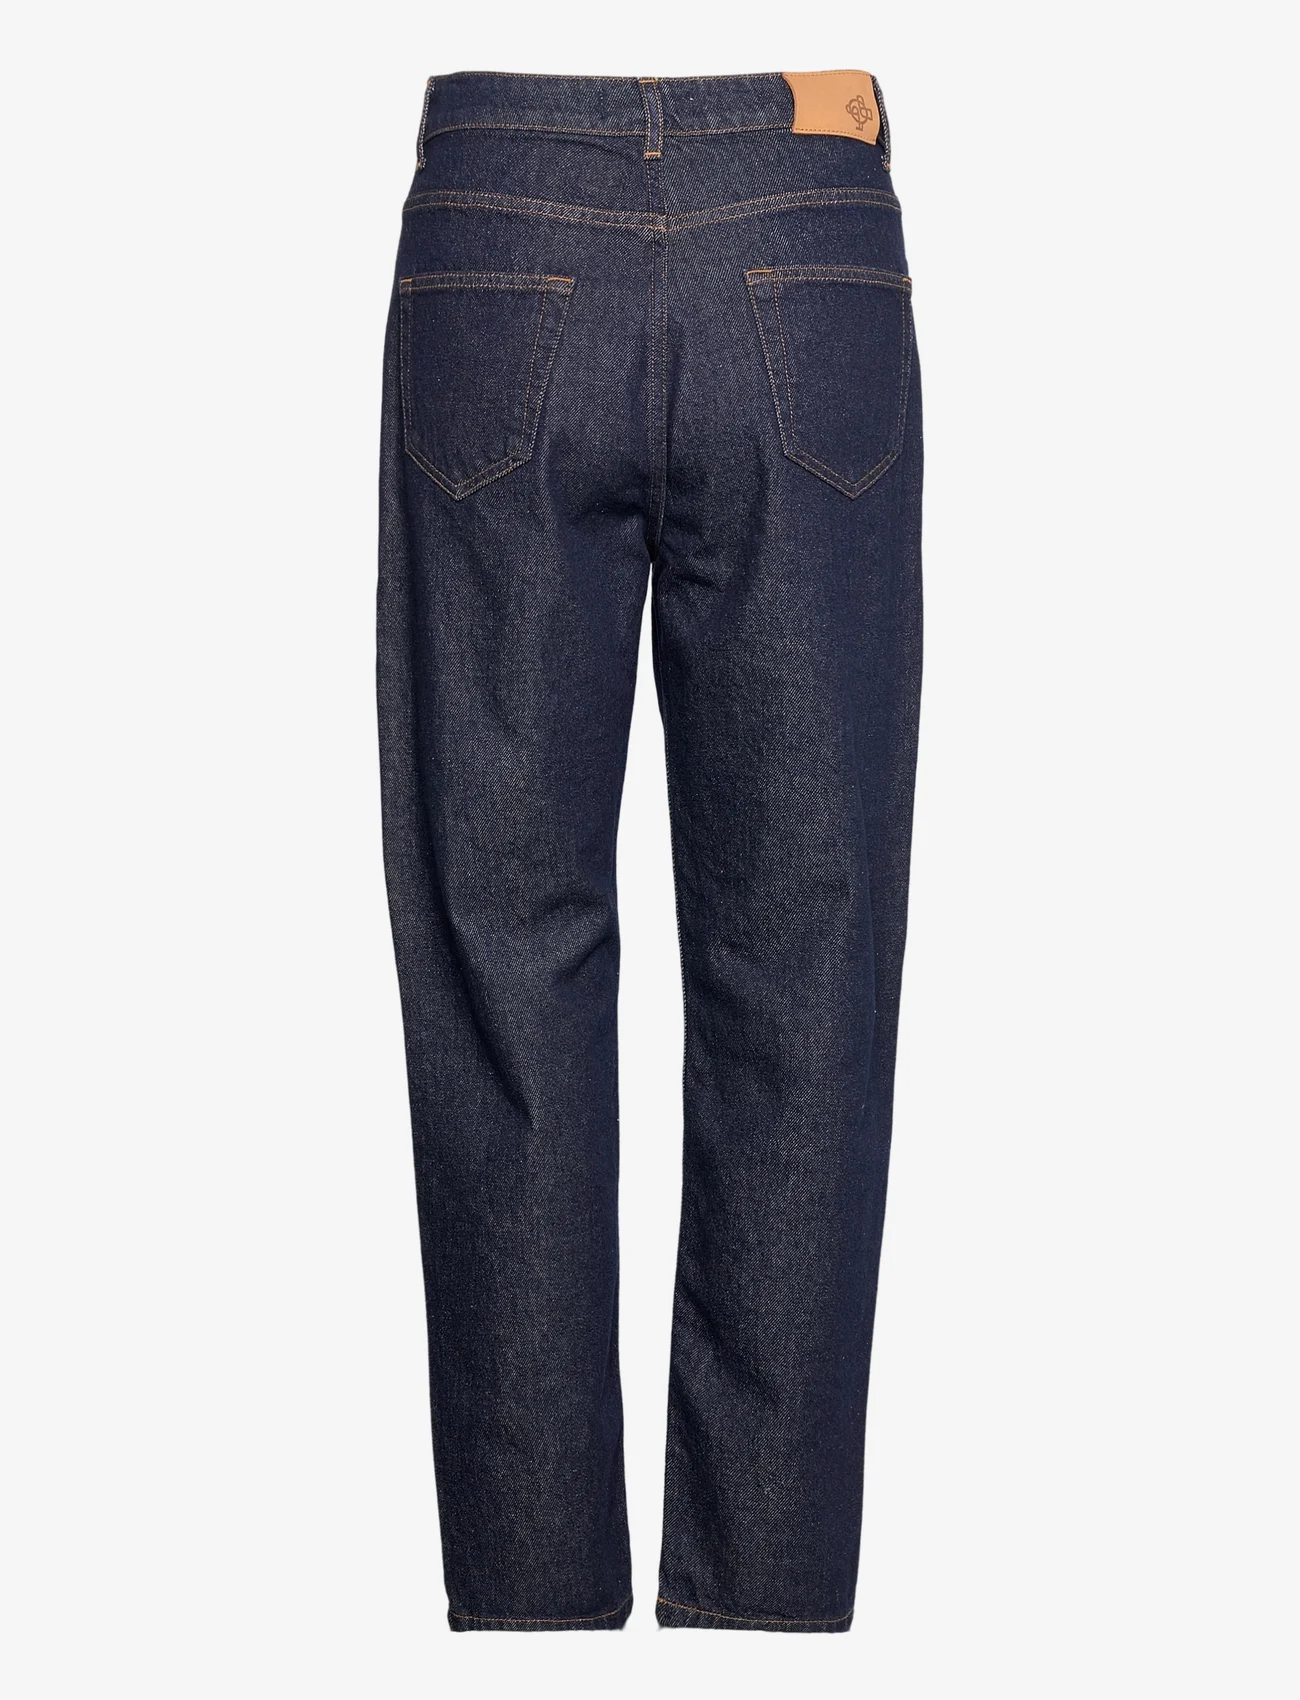 Just Female - Stormy jeans 0103 - tiesaus kirpimo džinsai - blue rinse - 1